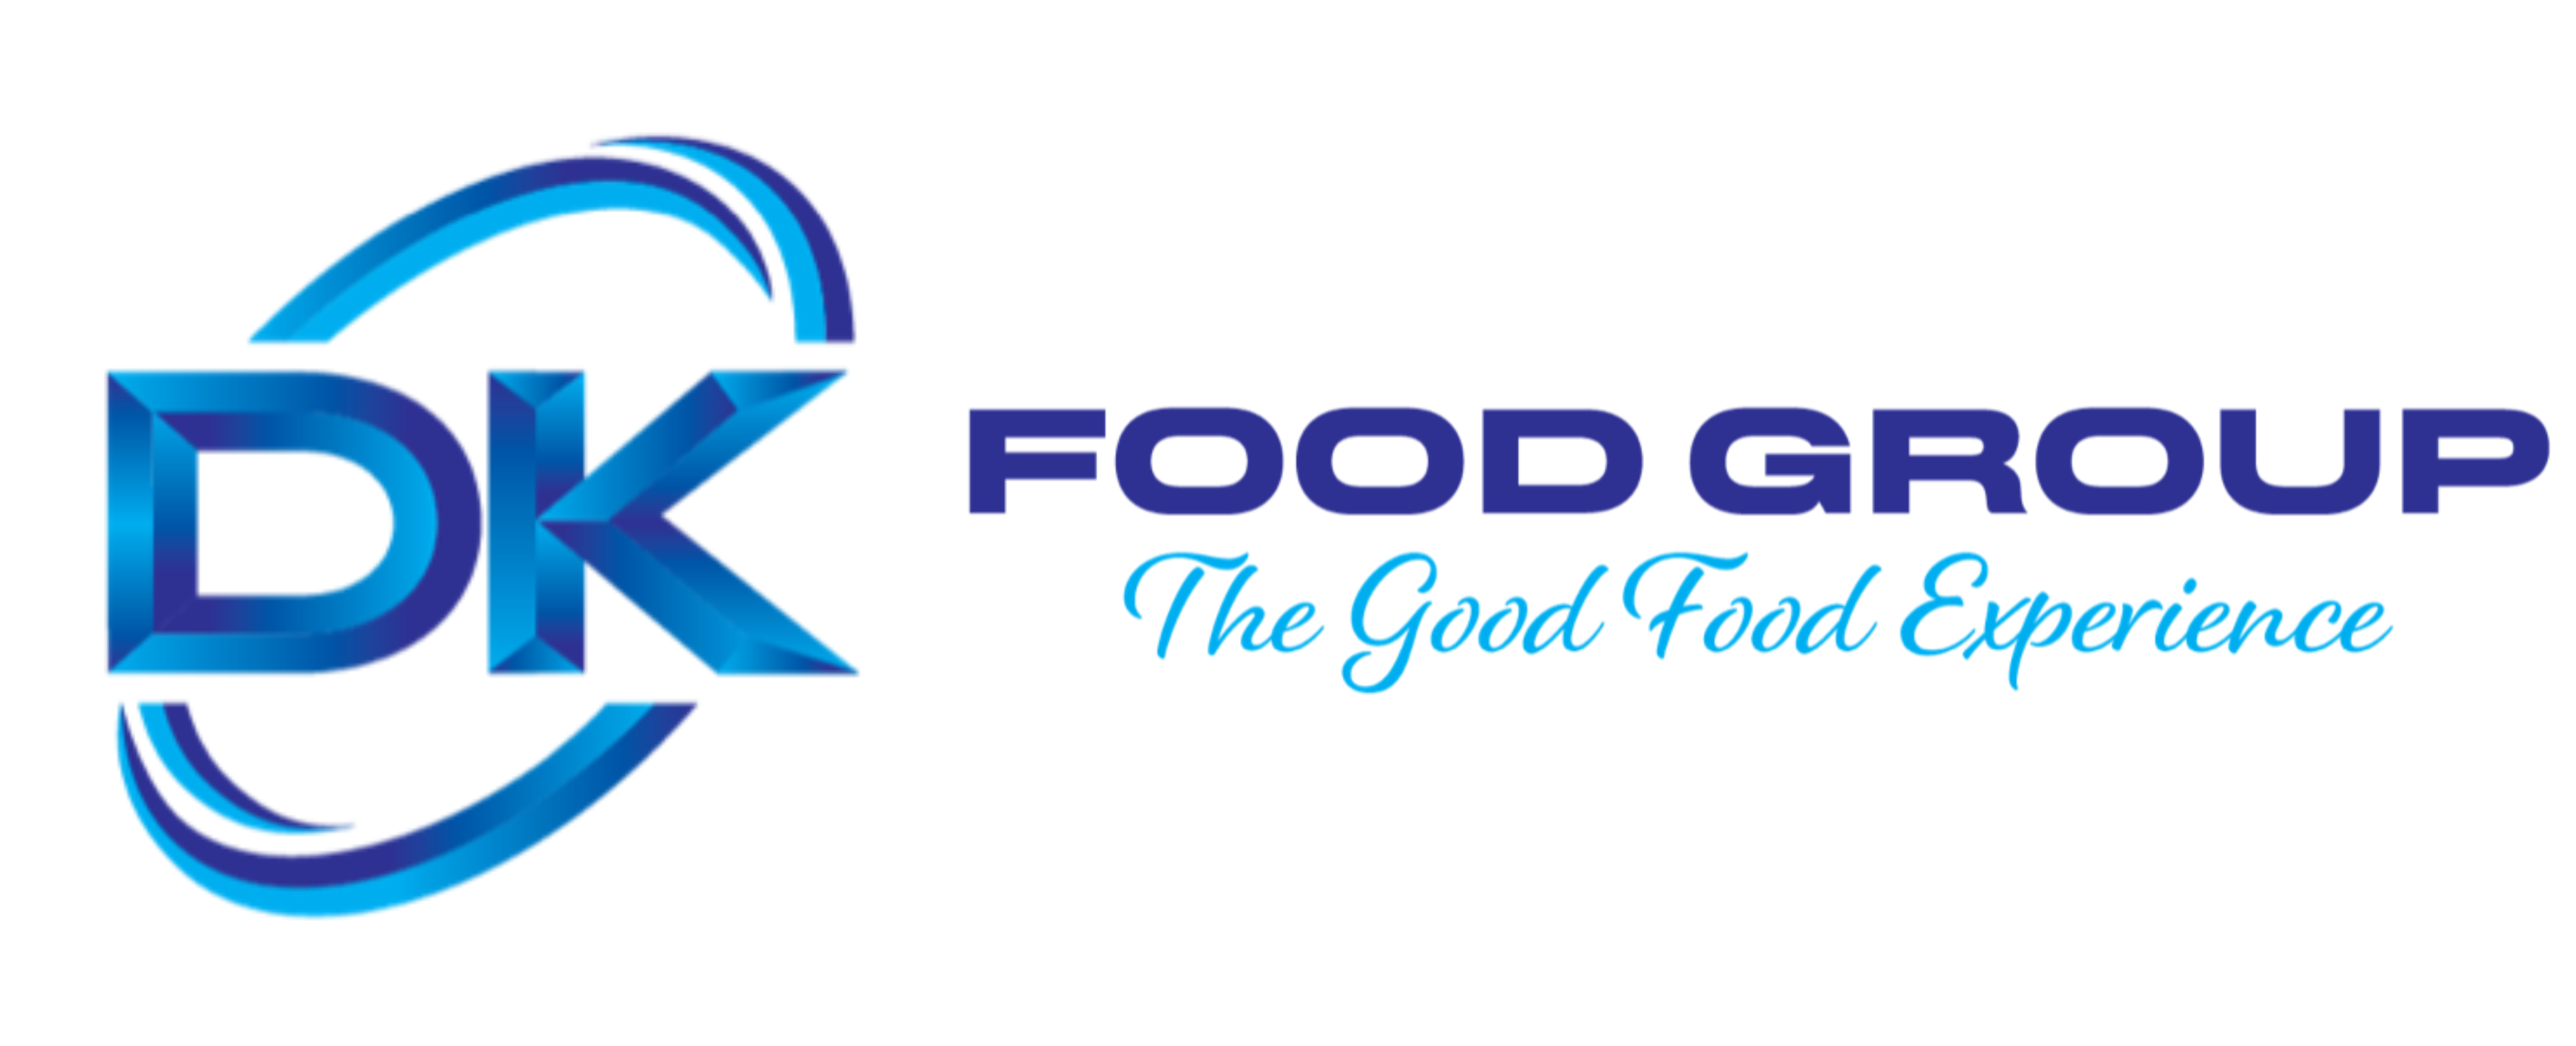 DK Food Group